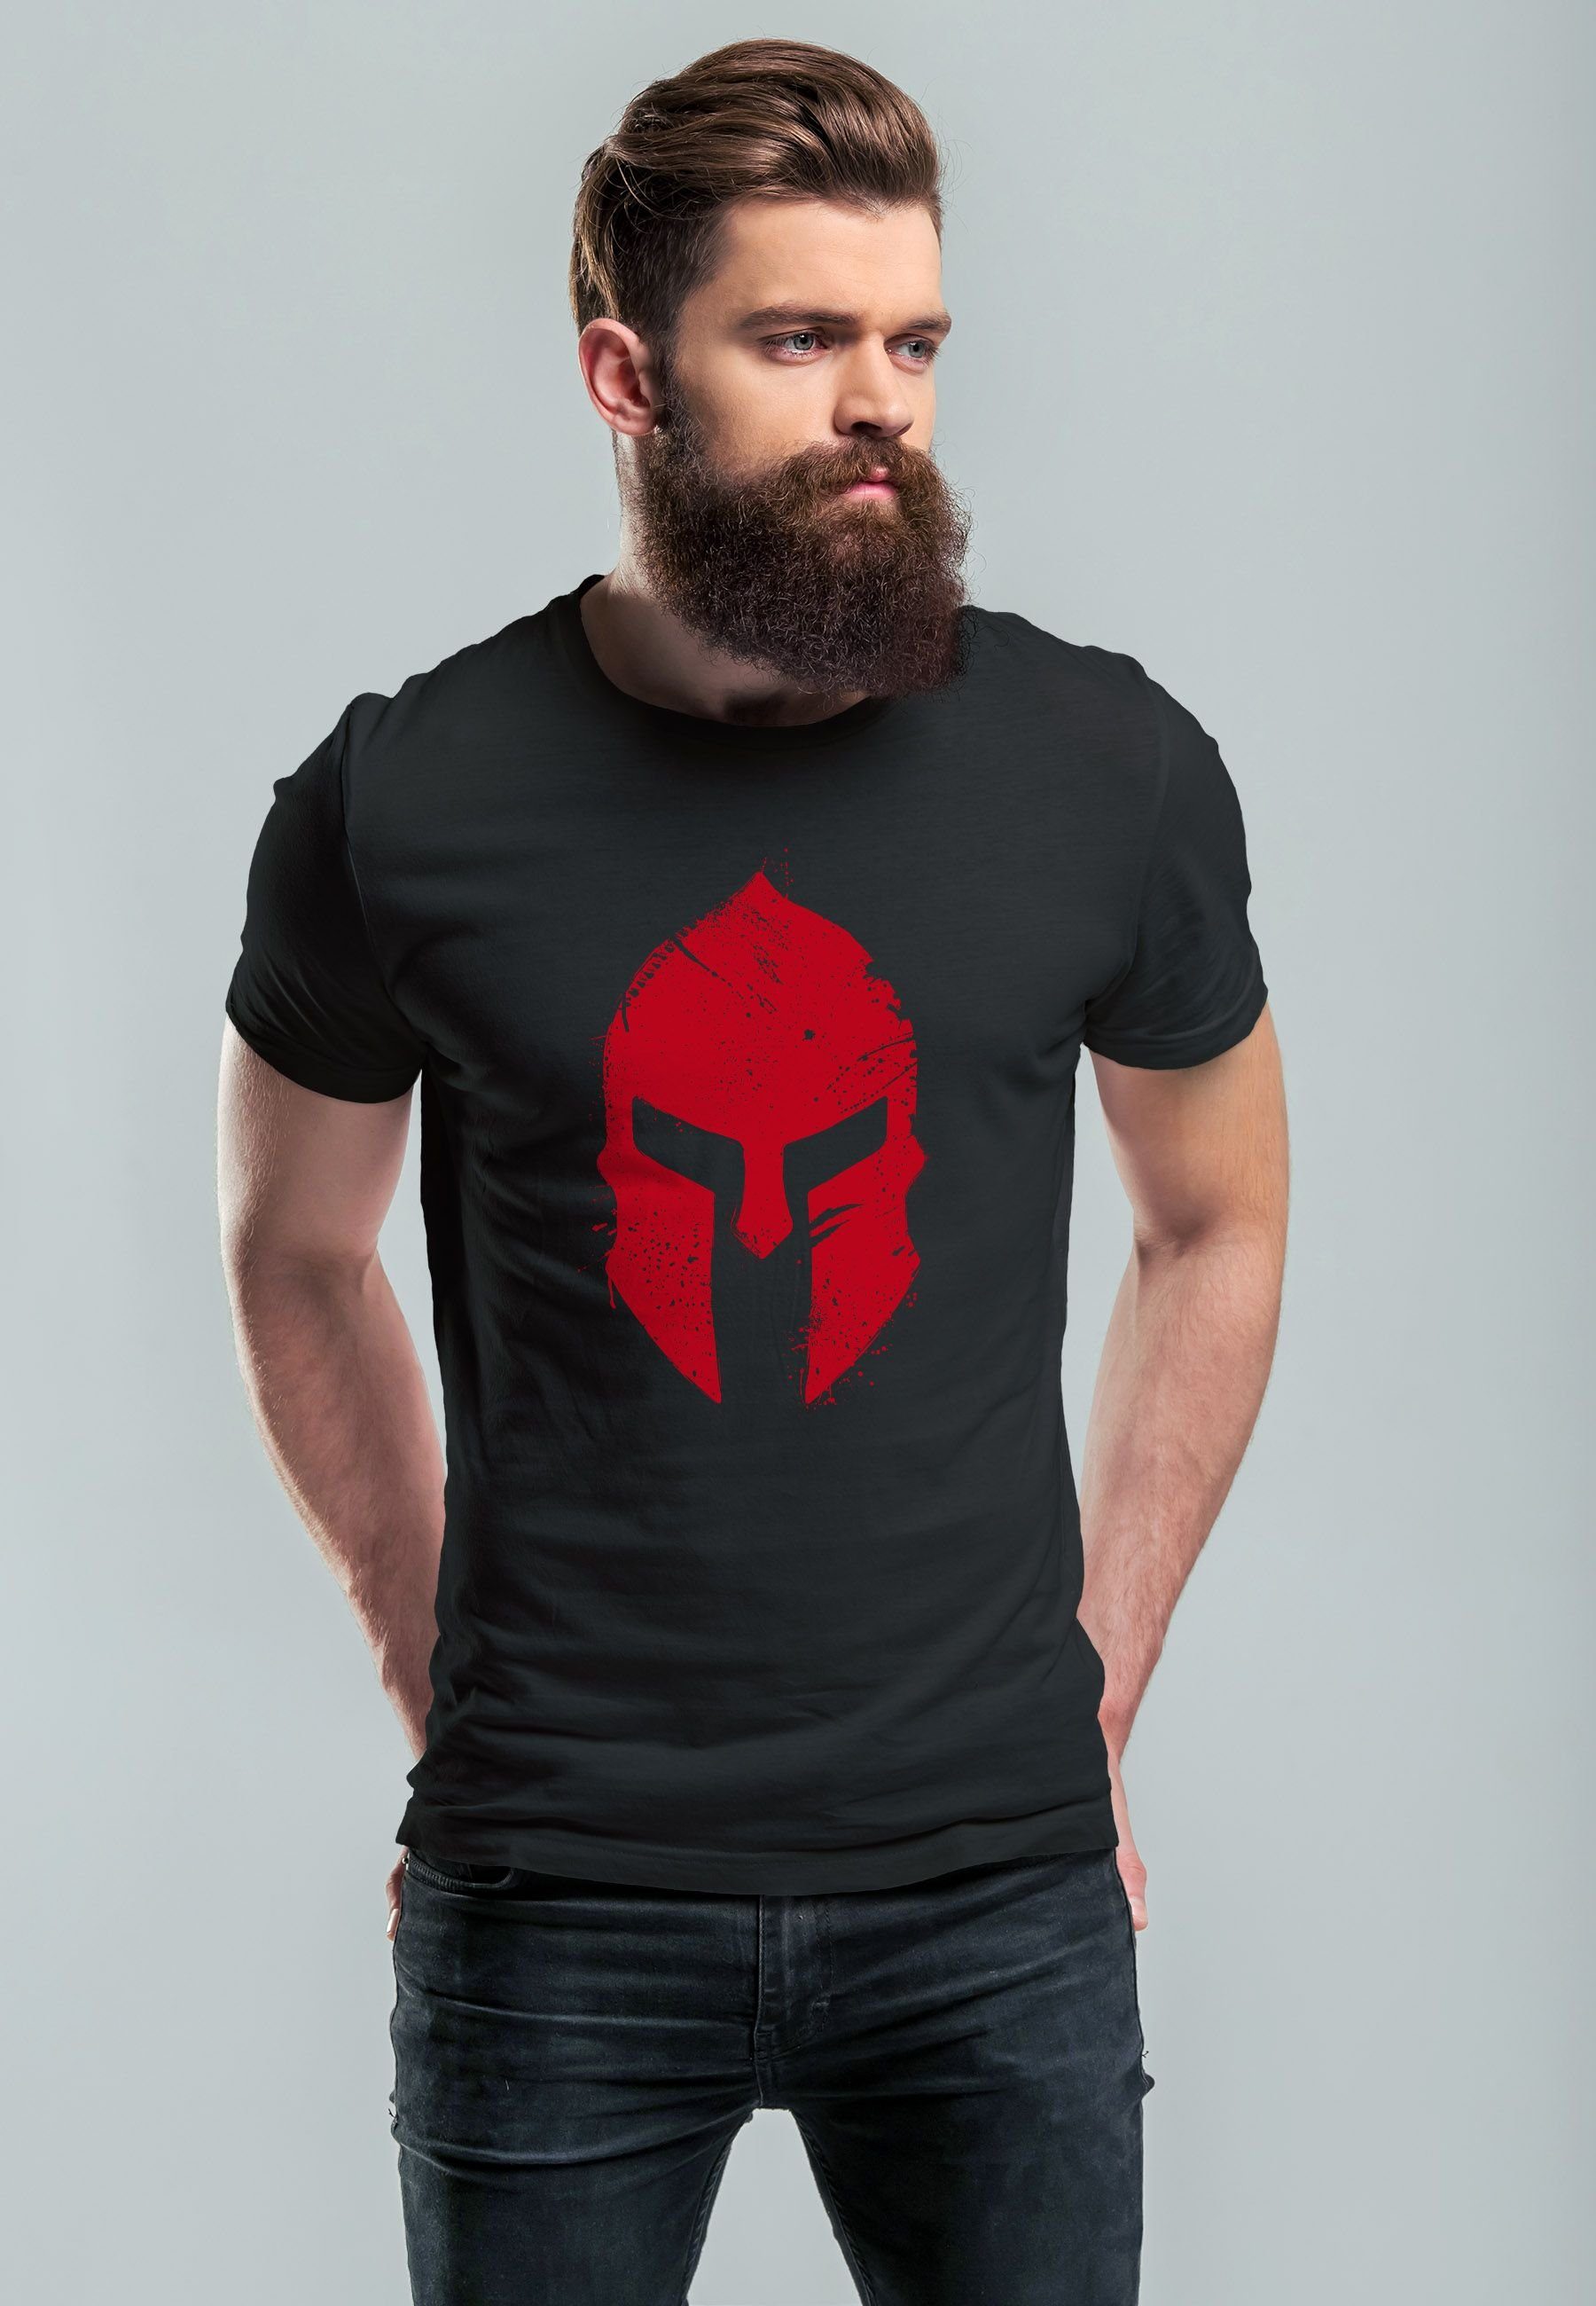 Neverless Print-Shirt T-Shirt Aufdruck Print schwarz Print Sp Herren mit Krieger Warrior Sparta-Helm Gladiator